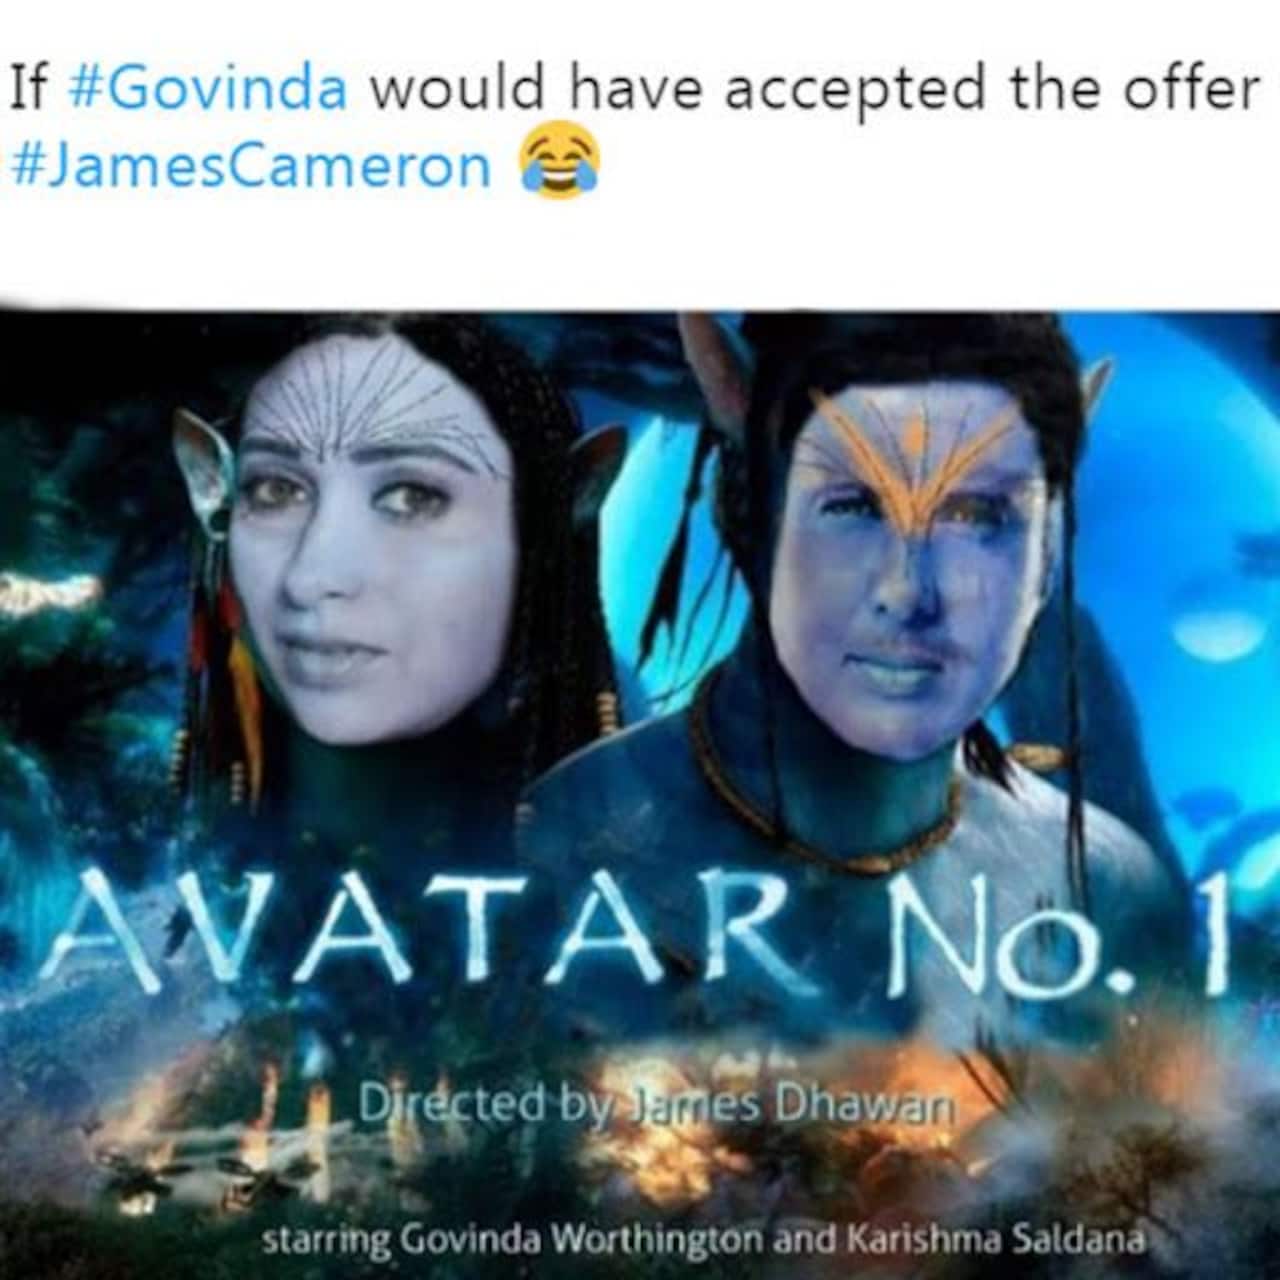 Govinda Avatar Meme 2024: Hãy xem bức ảnh độc đáo và vui nhộn này của cỗ máy hài hước nổi tiếng trong năm 2024, Govinda! Hình ảnh của anh ta trong trang phục vô cùng ấn tượng sẽ khiến bạn cười đau bụng và cảm thấy sảng khoái.